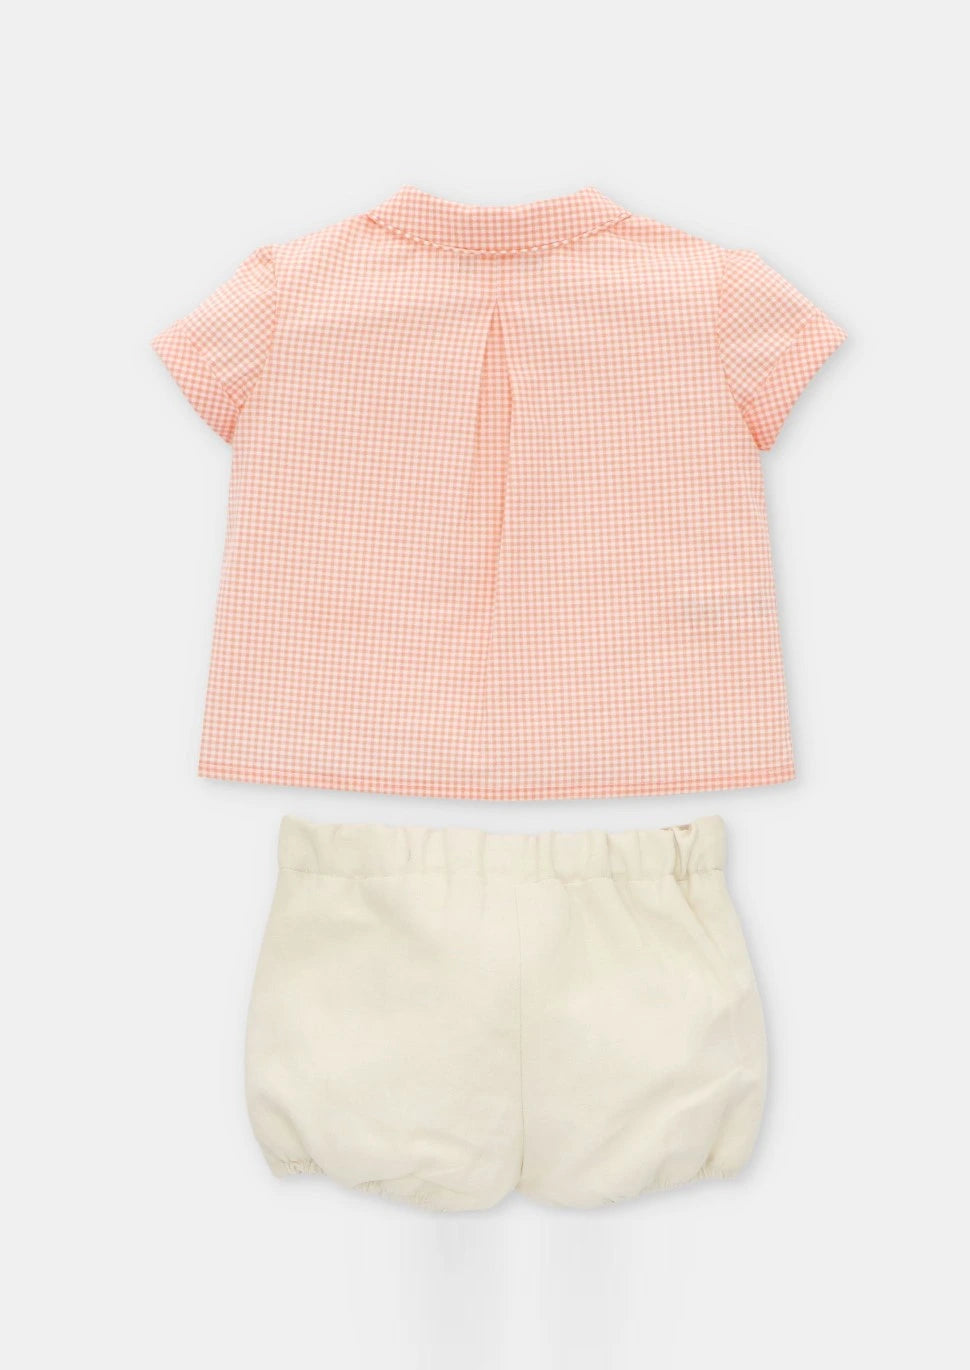 Summer Short Sleeved Shirt Set by martin aranda